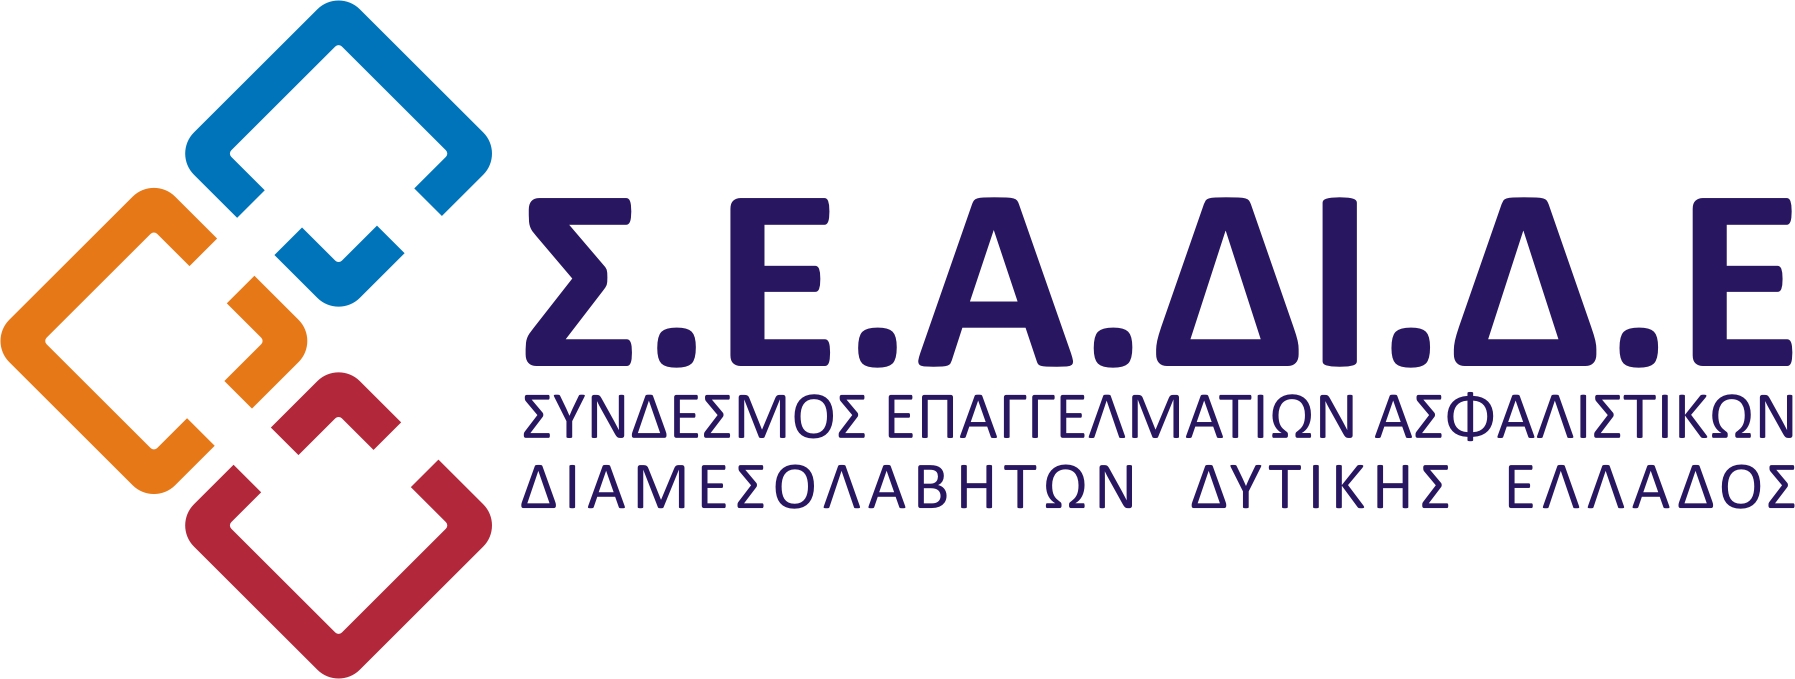 Νέο Δ.Σ. για τον Σύνδεσμο Επαγγελματιών Ασφαλιστικών Διαμεσολαβητών Δυτικής Ελλάδος